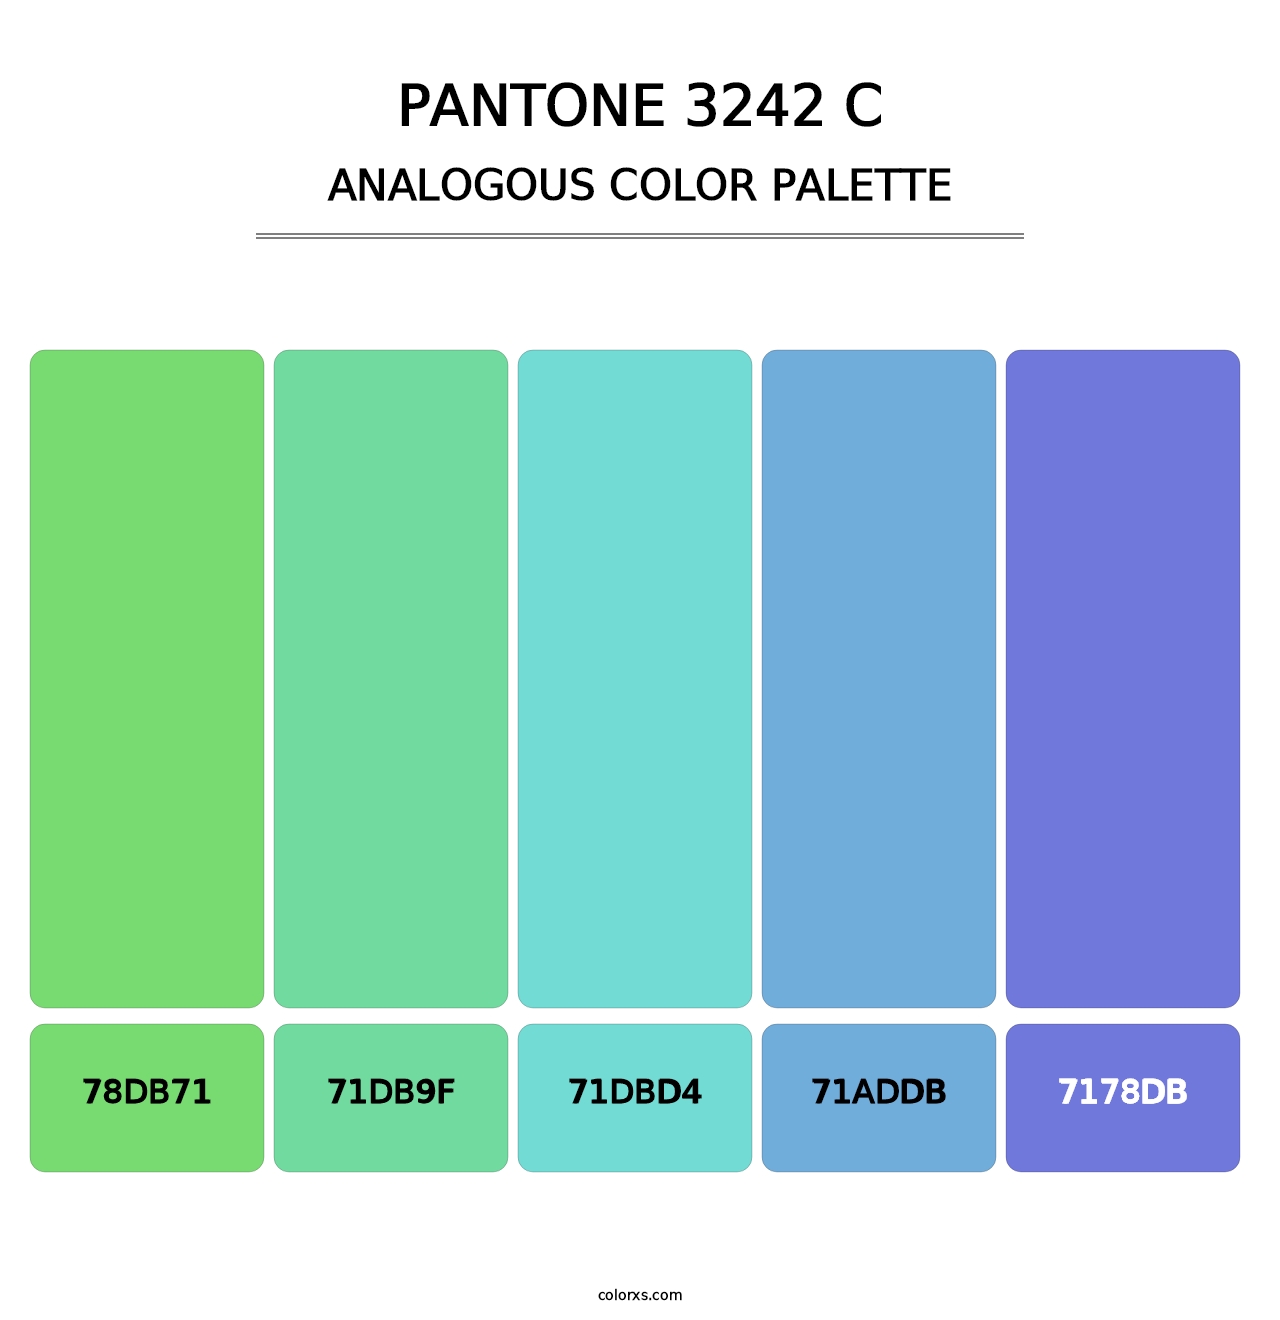 PANTONE 3242 C - Analogous Color Palette